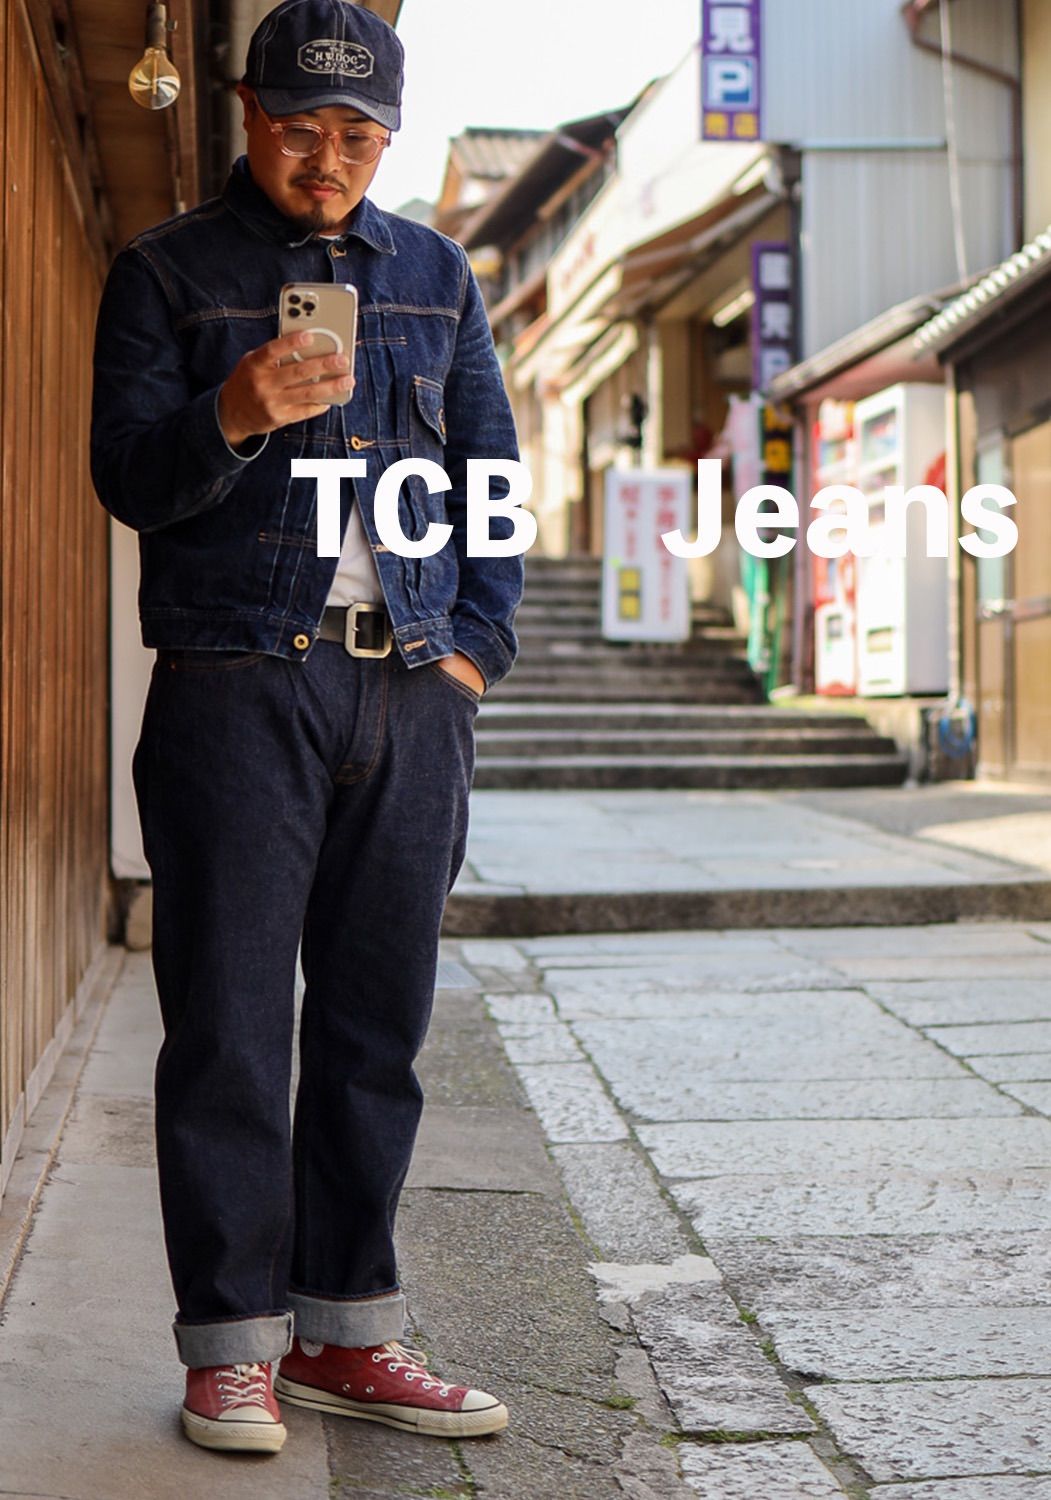 TCBジーンズ 32 TCB jeans 60's